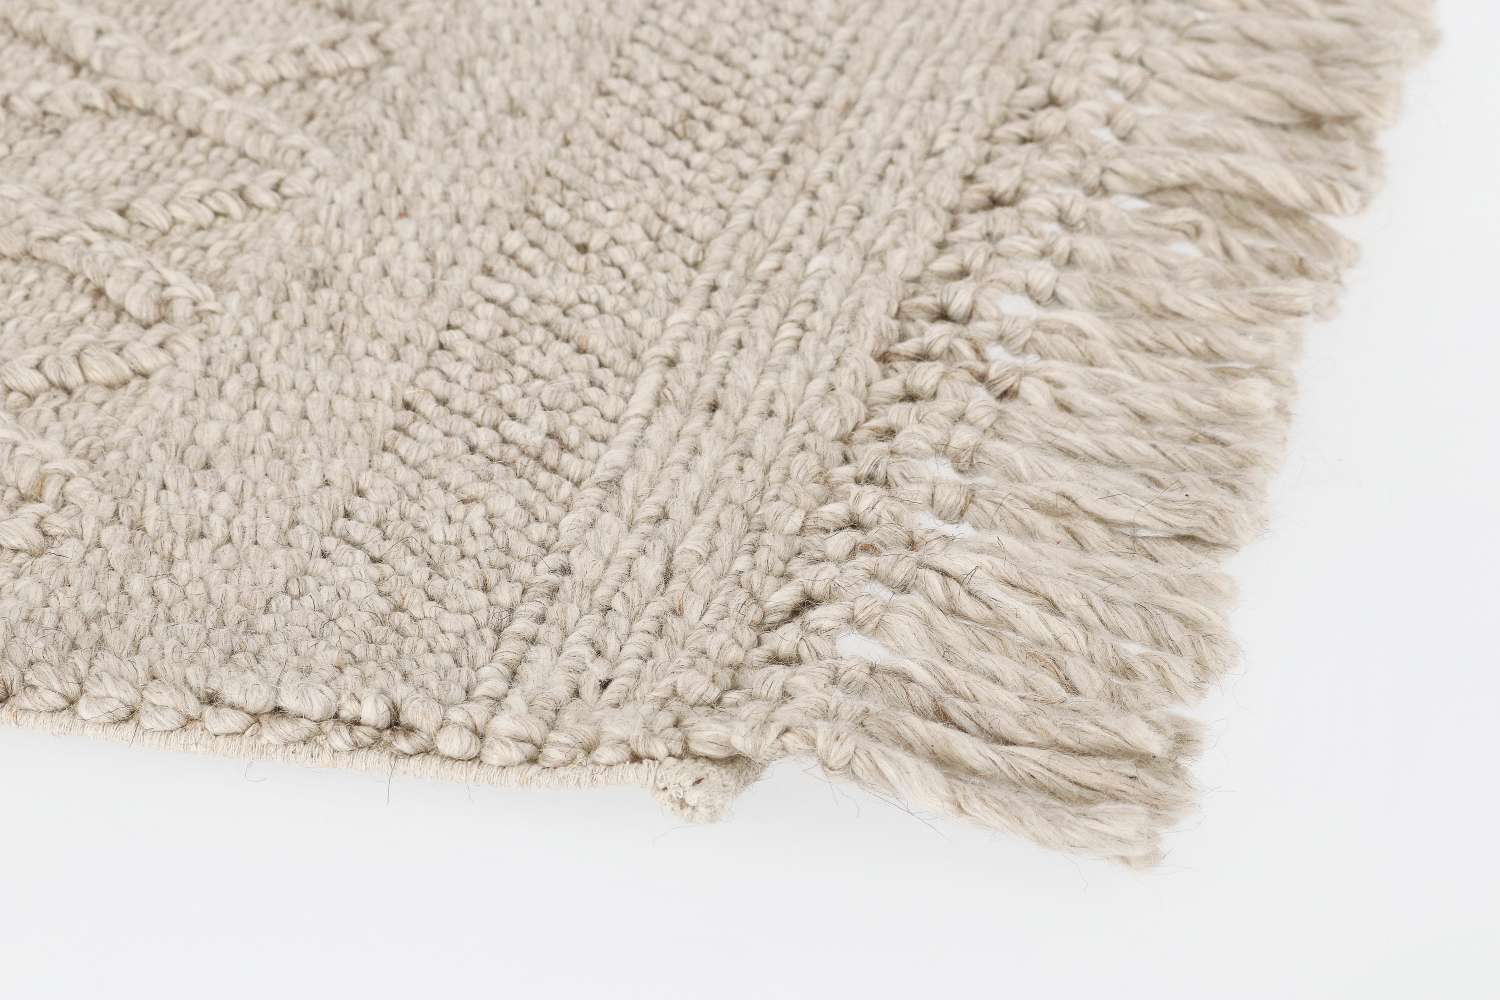 Der Teppich Hiruni überzeugt mit seinem Klassischen Design. Gefertigt wurde er aus 70% wolle und 30% Polyester. Der Teppich besitzt eine Beigen Farbton und die Maße von 160x230 cm.